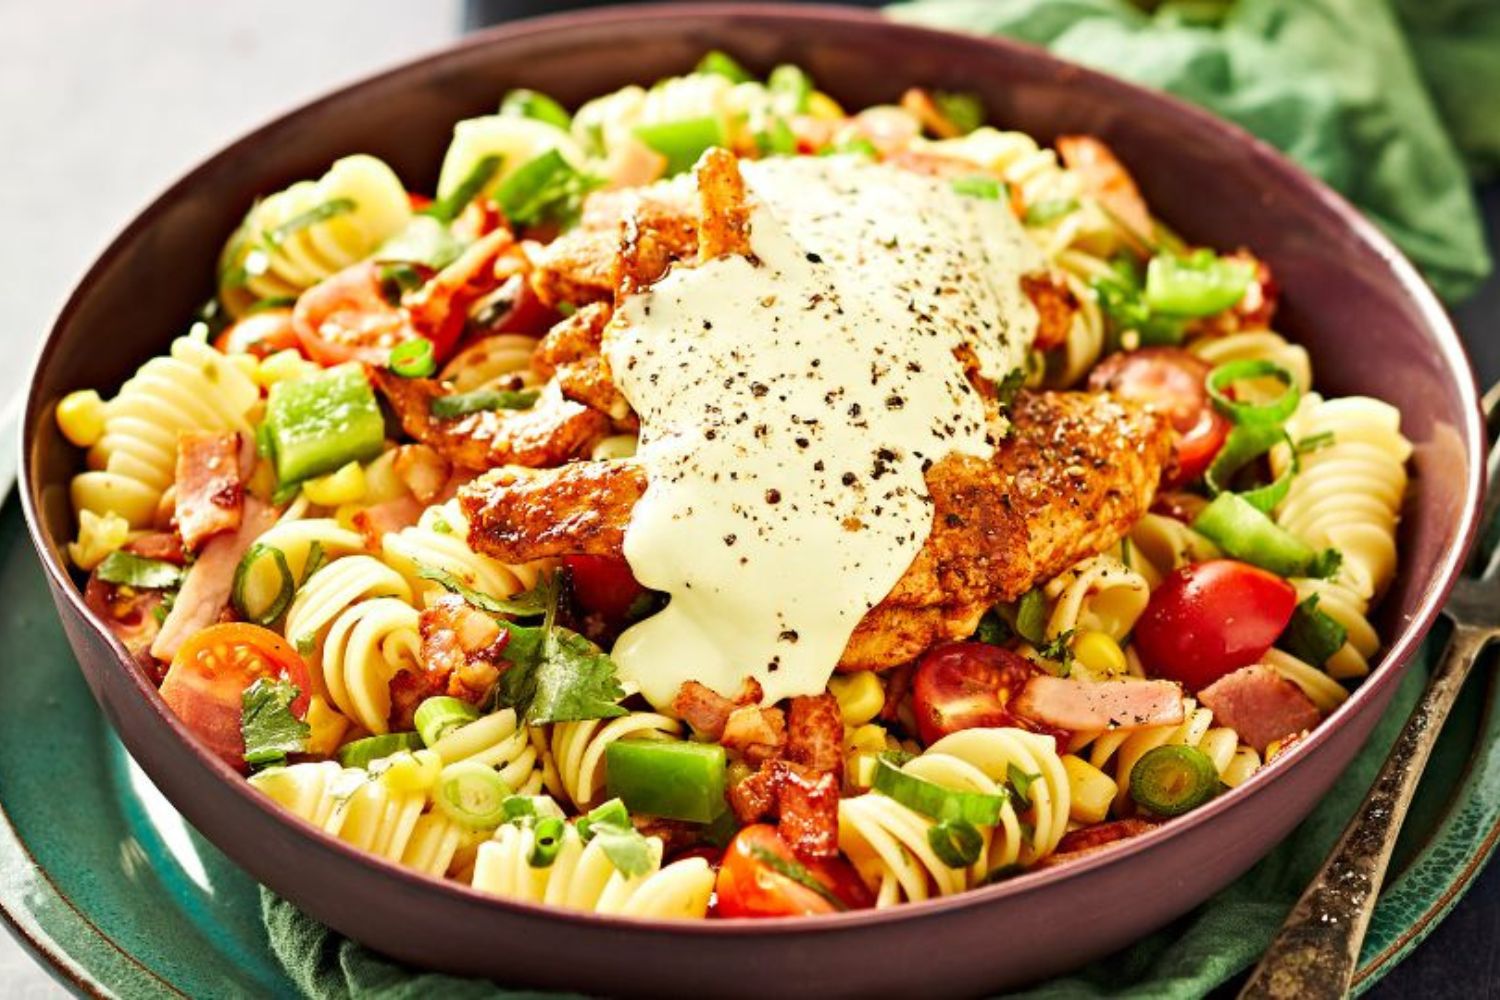 chicken-pasta-salad-with-avocado-ranch-dressing-recipe